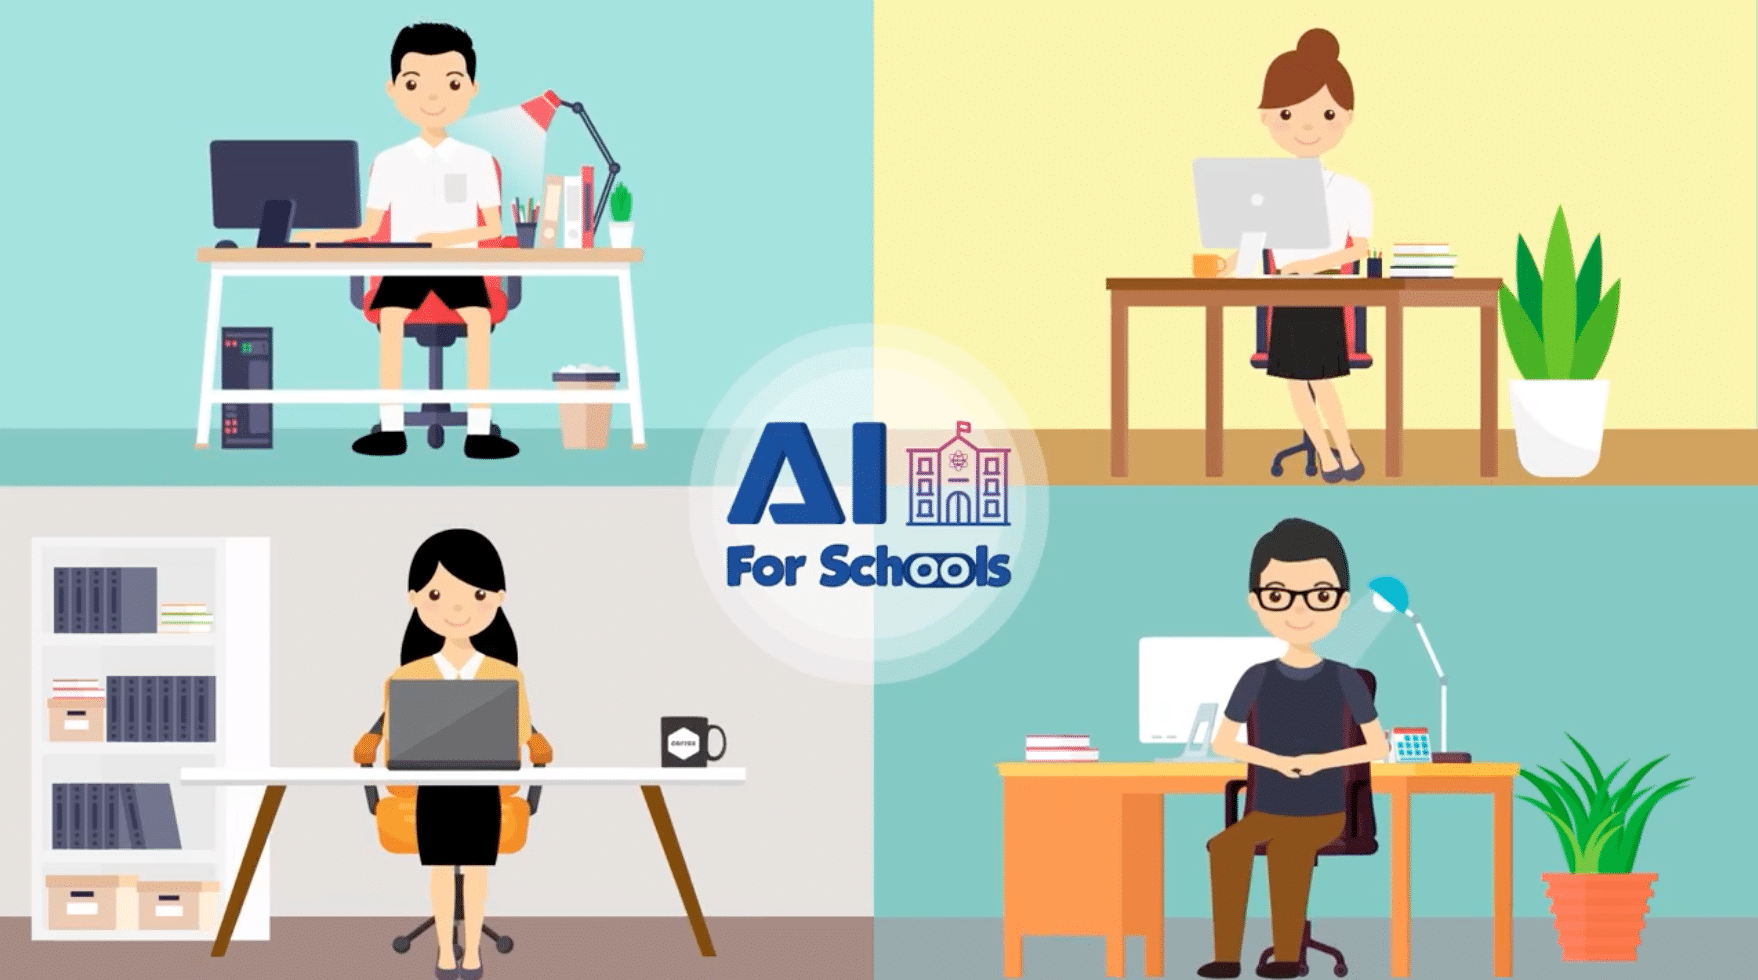 สสวท.เปิดอบรมออนไลน์หลักสูตร "AI For Schools Level 4" รุ่น 2 รับใบประกาศฟรี!! สมัครได้ตั้งแต่ 15 สิงหาคม – 15 พฤศจิกายน 2564 